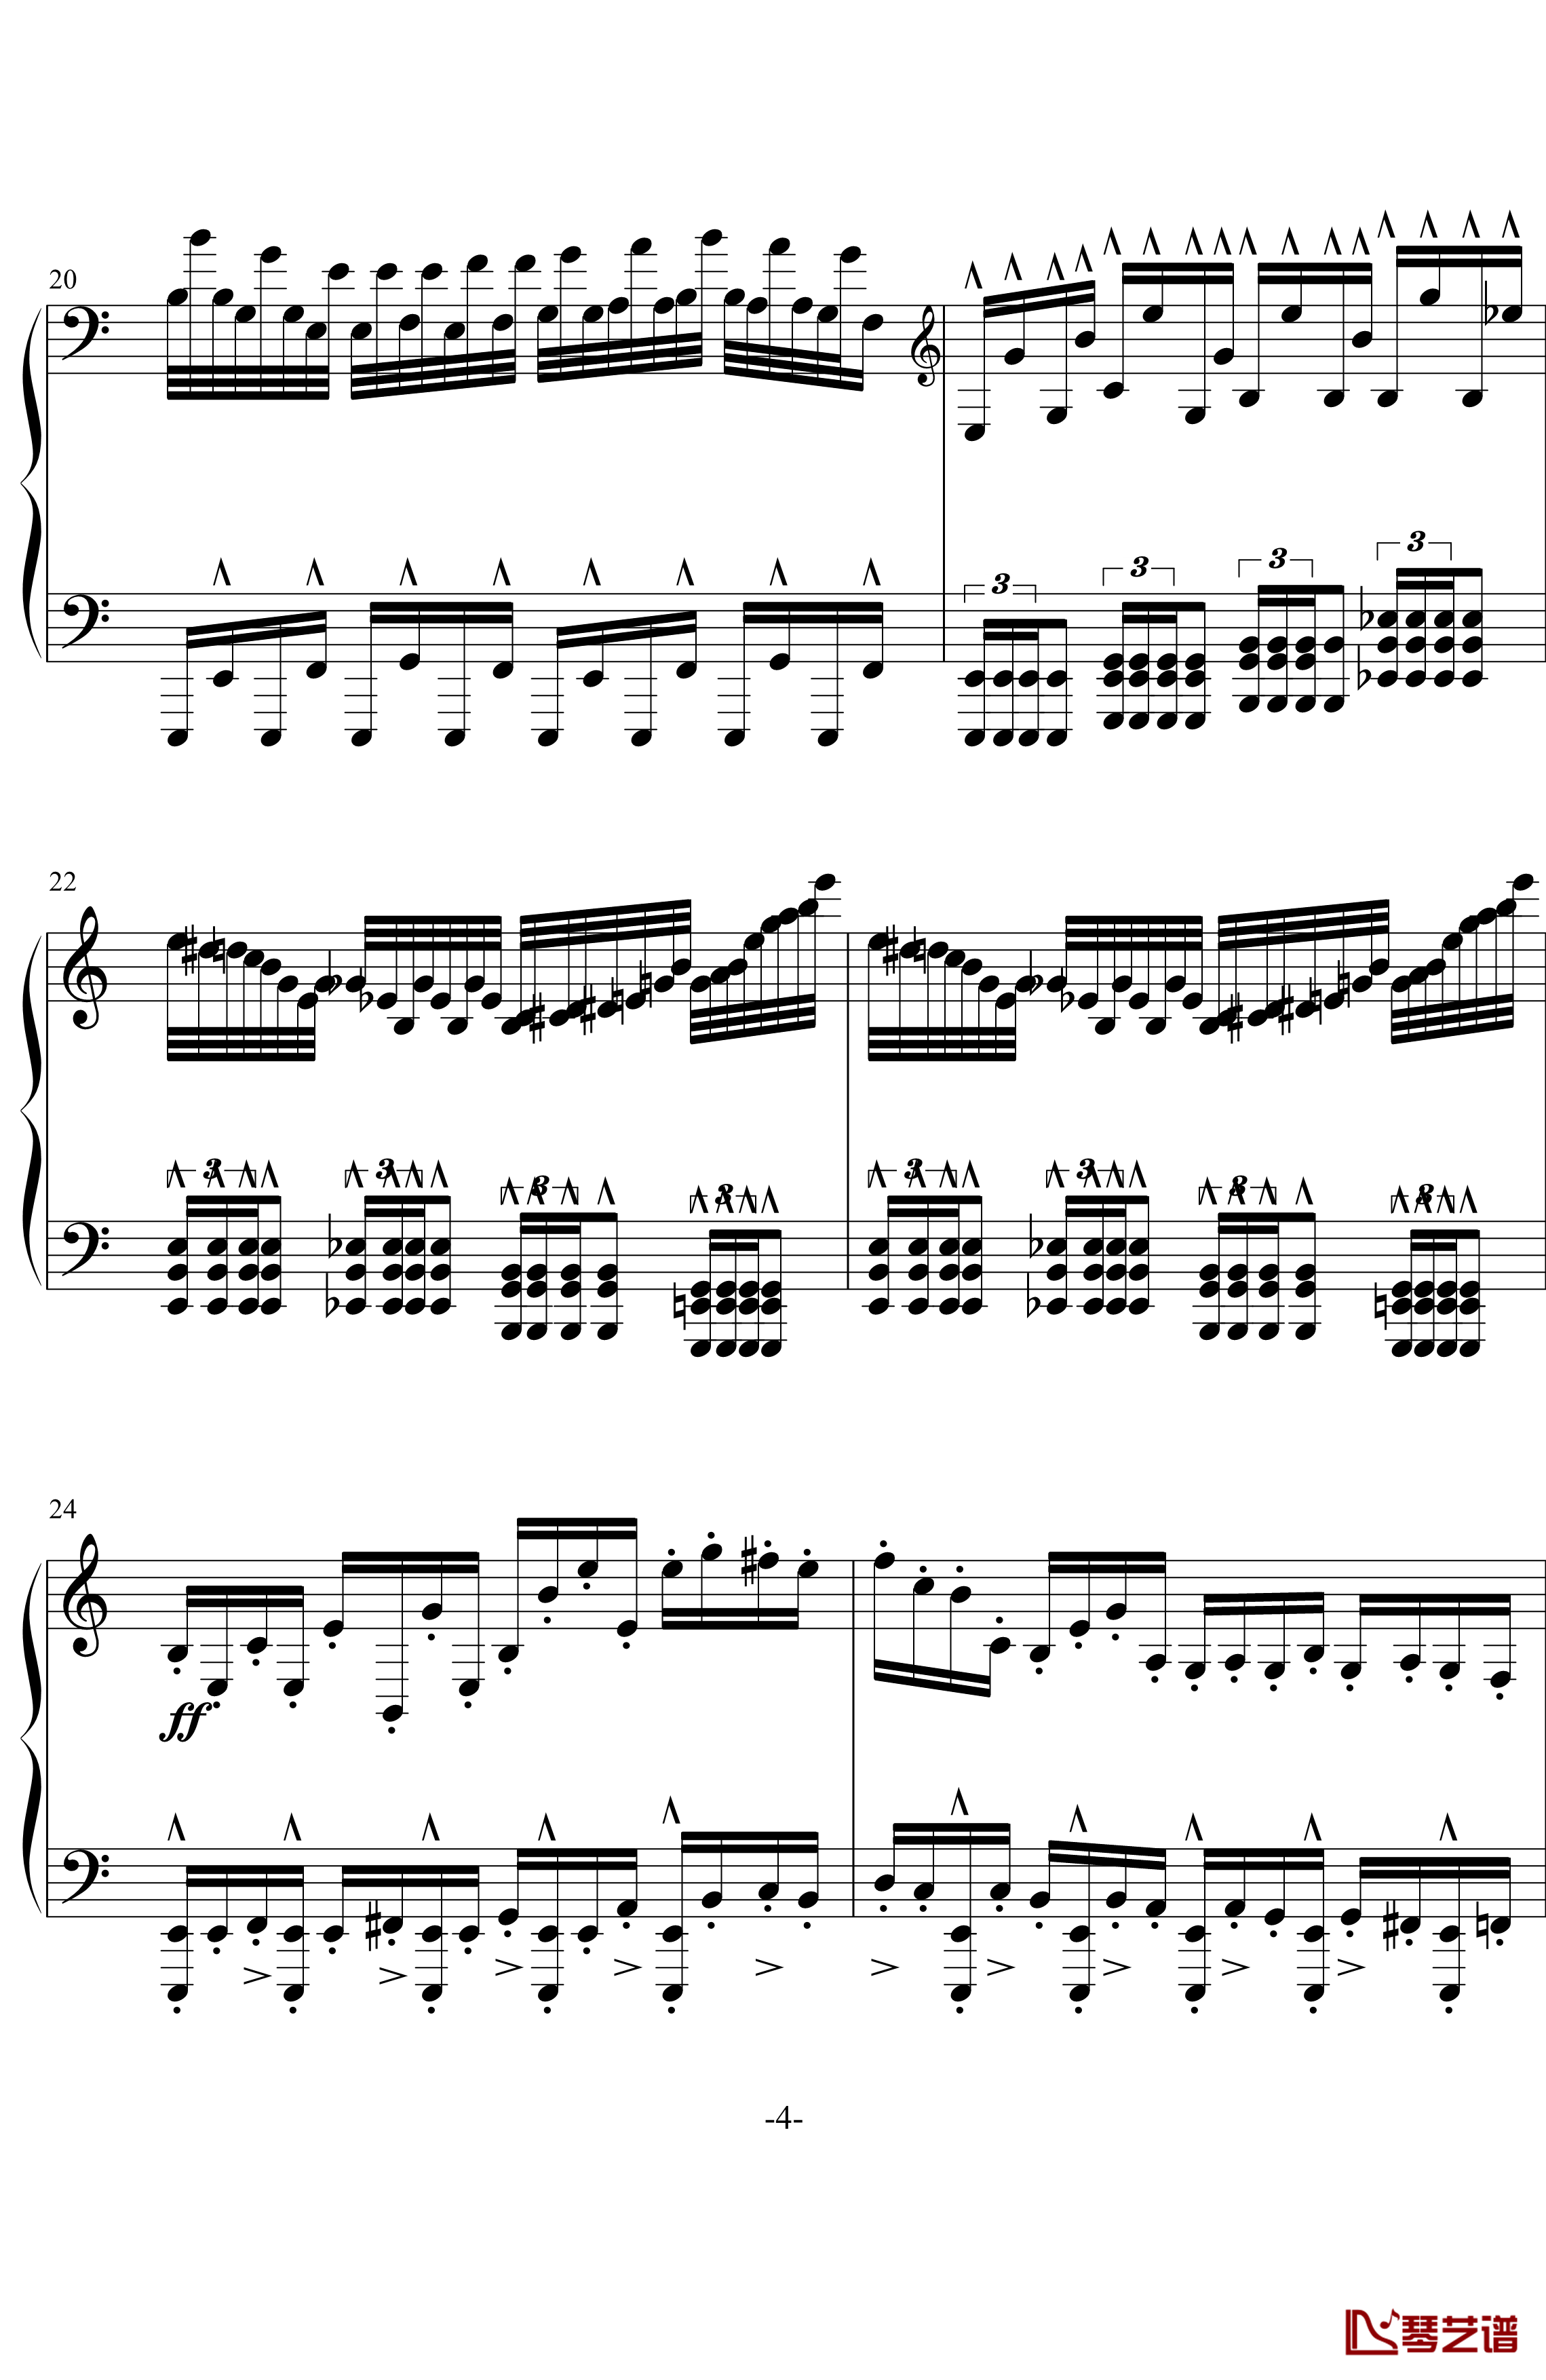 龙卷风钢琴谱-超级练习曲-wang5549034414